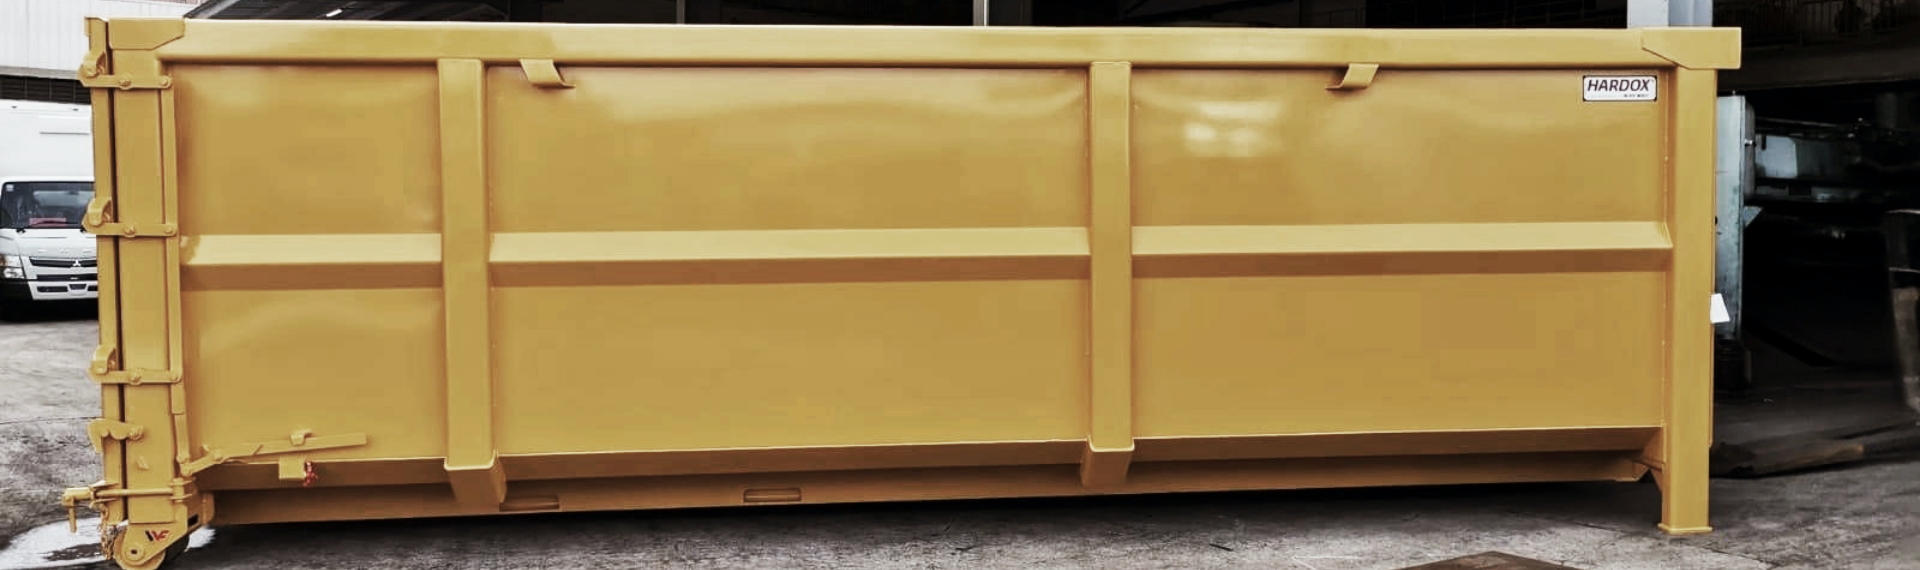 ตู้คอนเทนเนอร์ขยะสีเหลืองเงาสำหรับเก็บเศษเหล็กที่ผลิตจากเหล็ก Hardox® HiAce